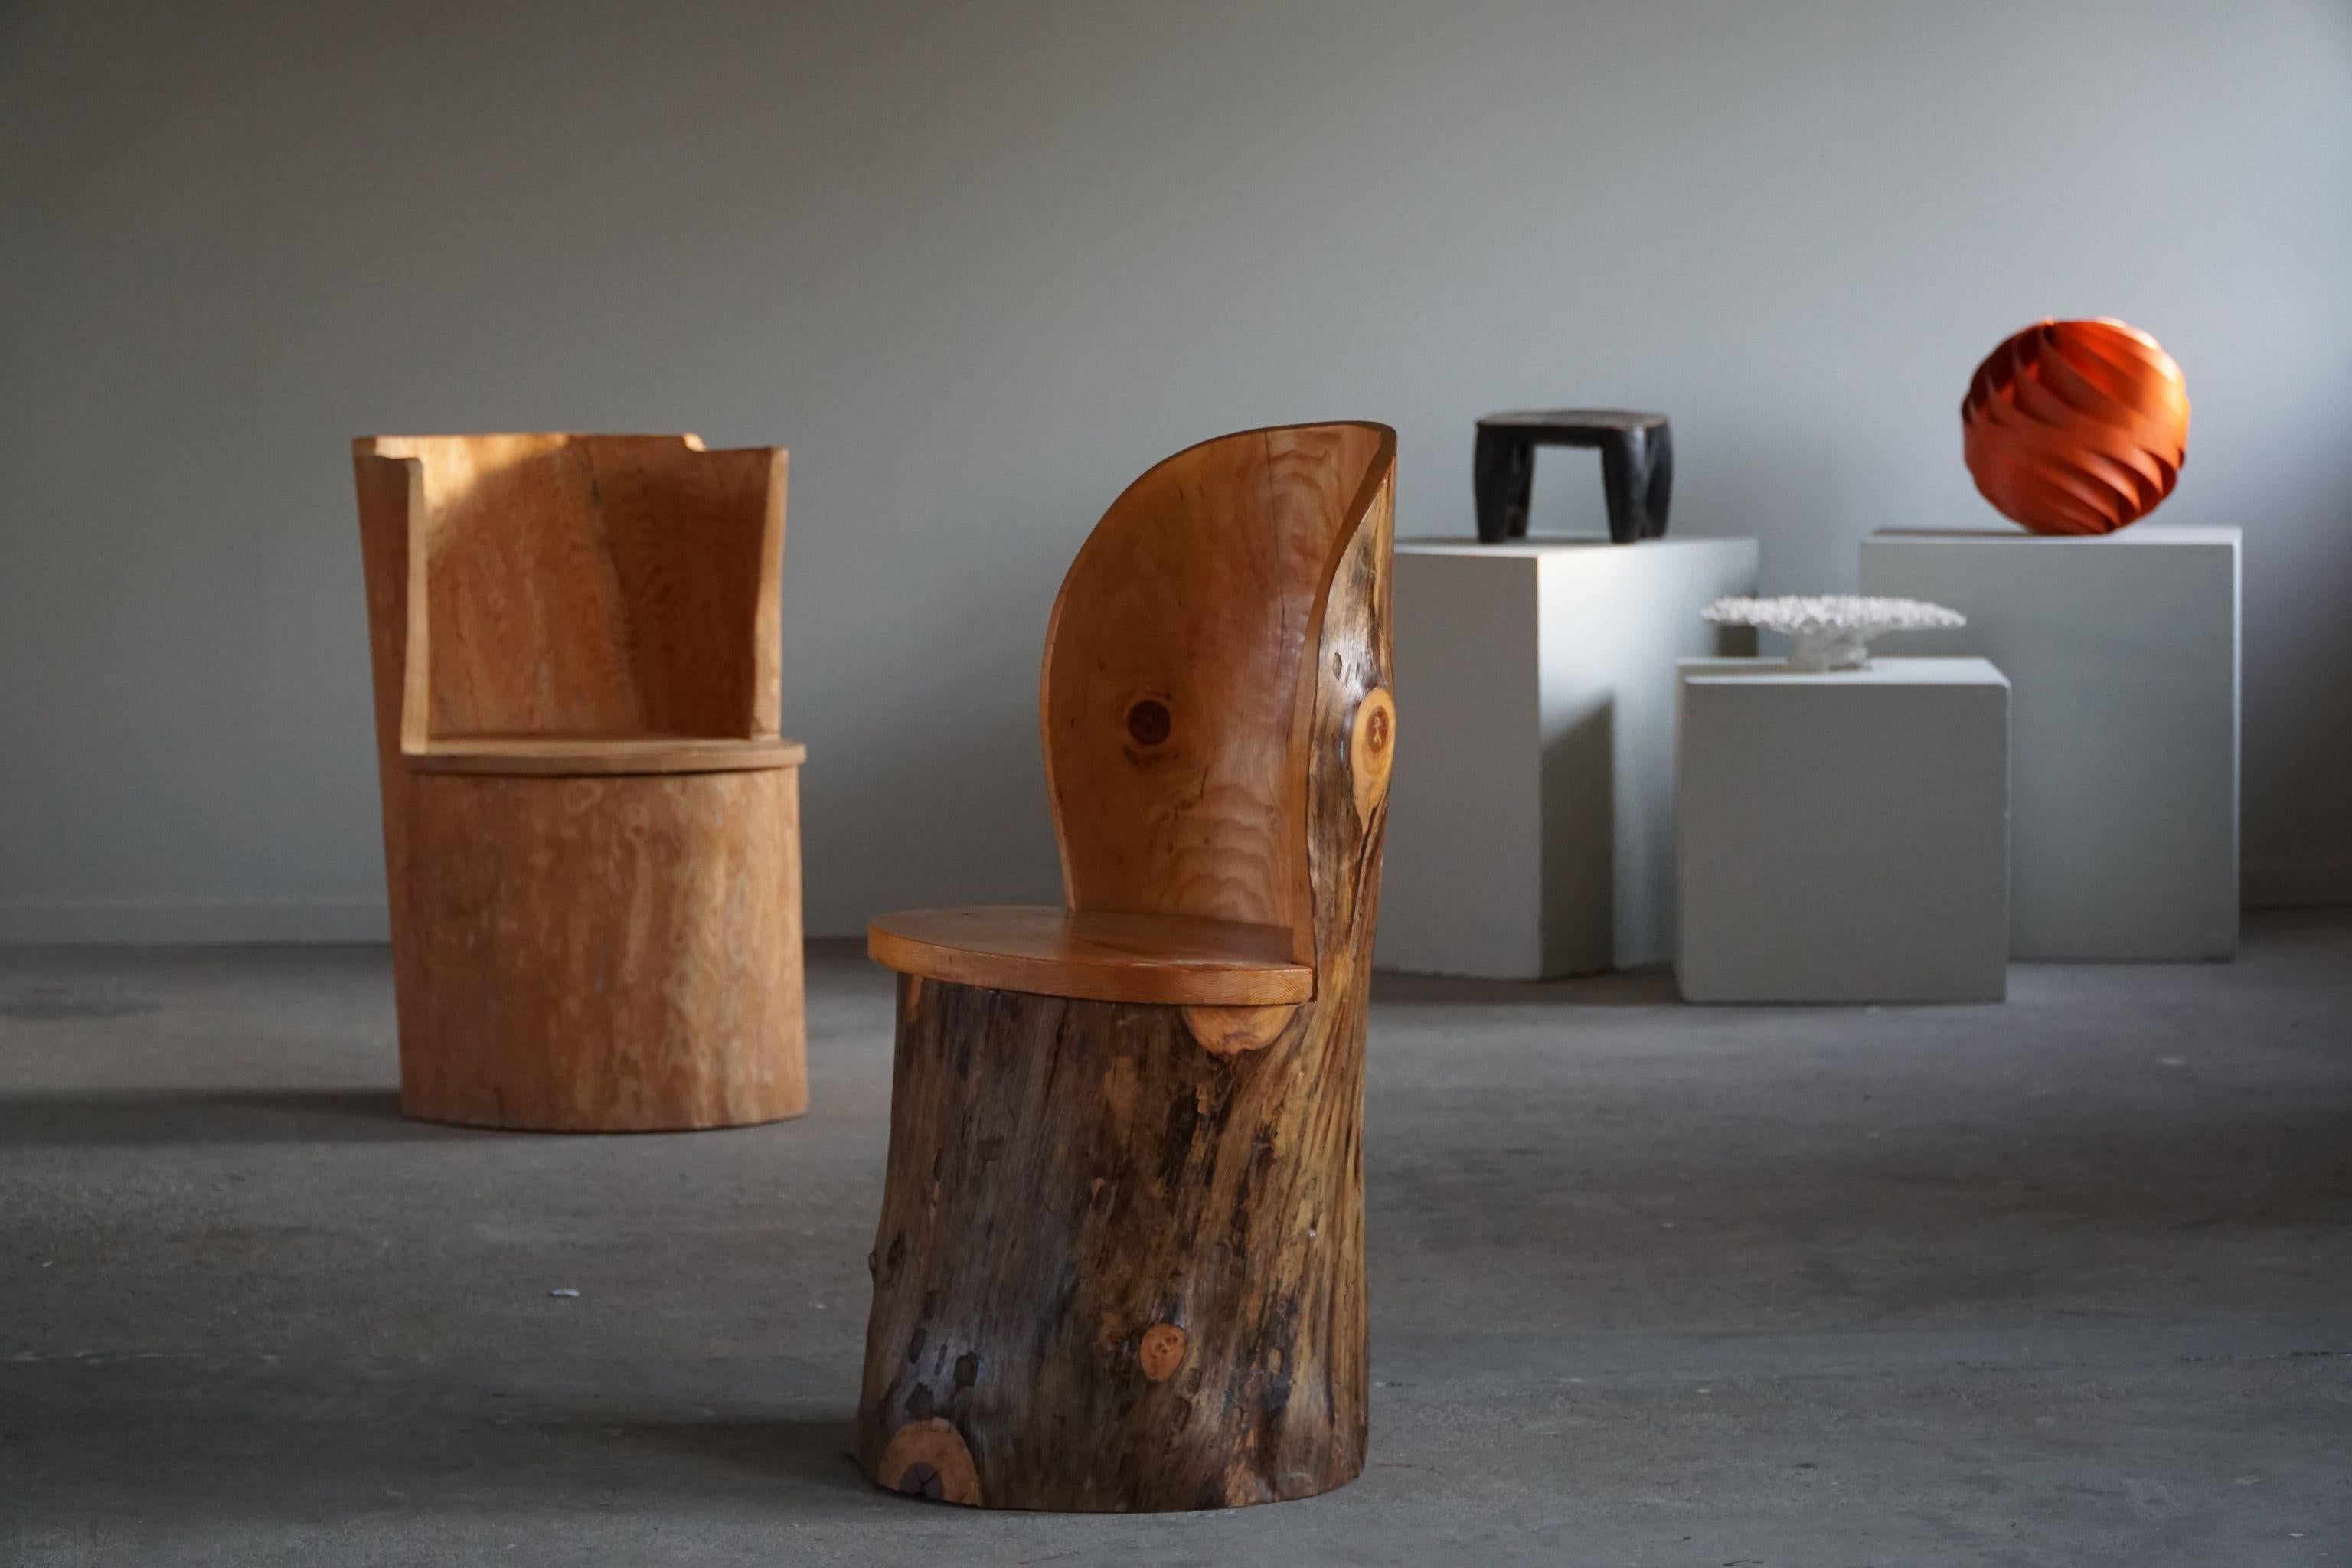 Une adorable chaise en pin massif. Sculptée à la main par un ébéniste suédois inconnu dans les années 1960. Une belle pièce wabi sabi pour un intérieur moderne.

Cette jolie beauté s'adaptera à de nombreux types de décors. Parfaitement adapté à un